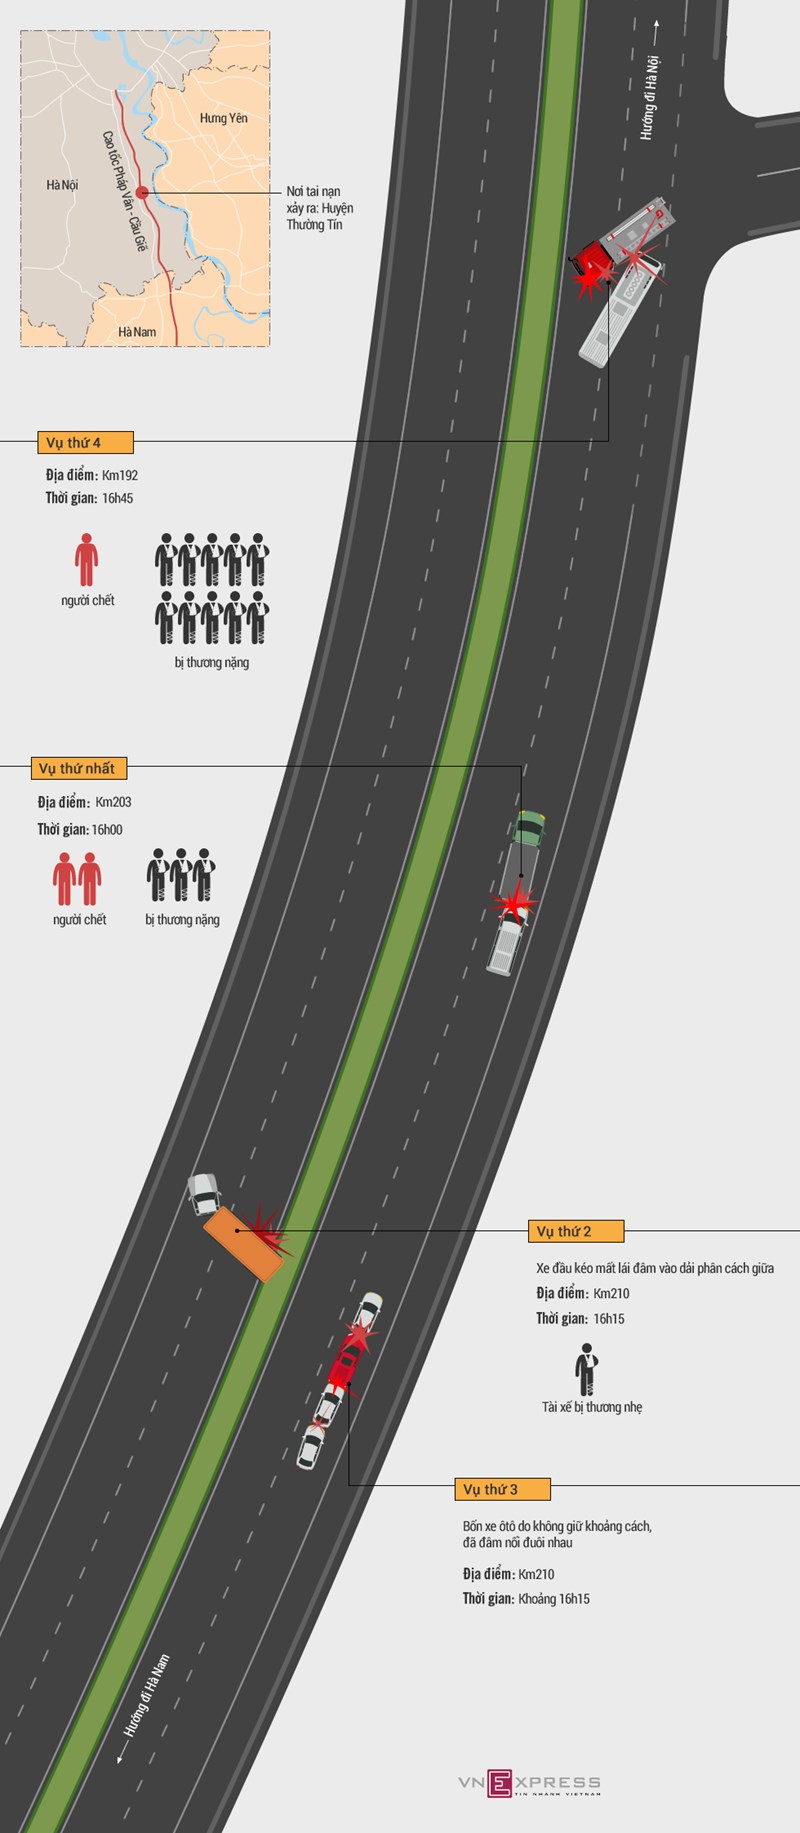 [Infographic] Nhìn lại diễn biến bốn vụ tai nạn trên cao tốc Pháp Vân - Ảnh 1